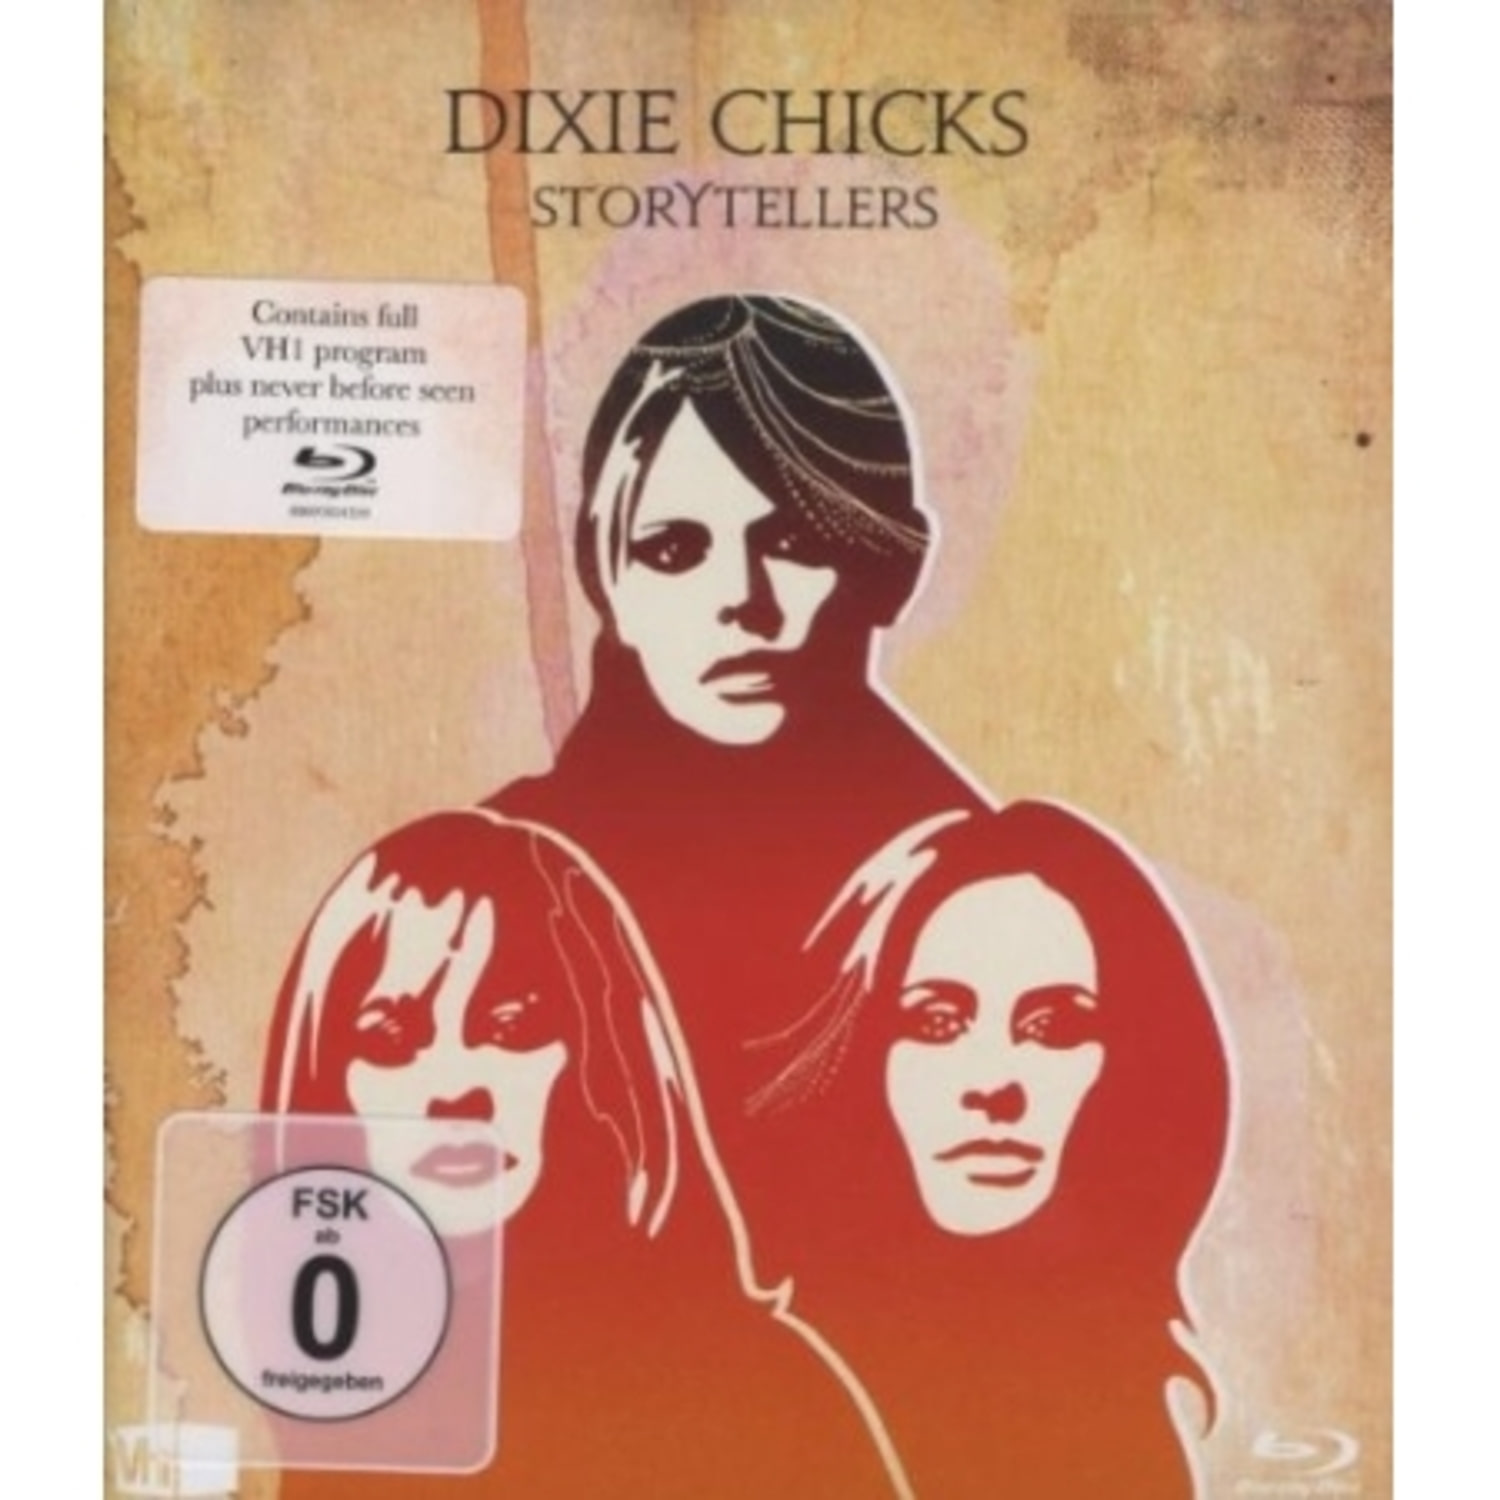 DIXIE CHICKS - VH1 STORYTELLERS (1 DISC)